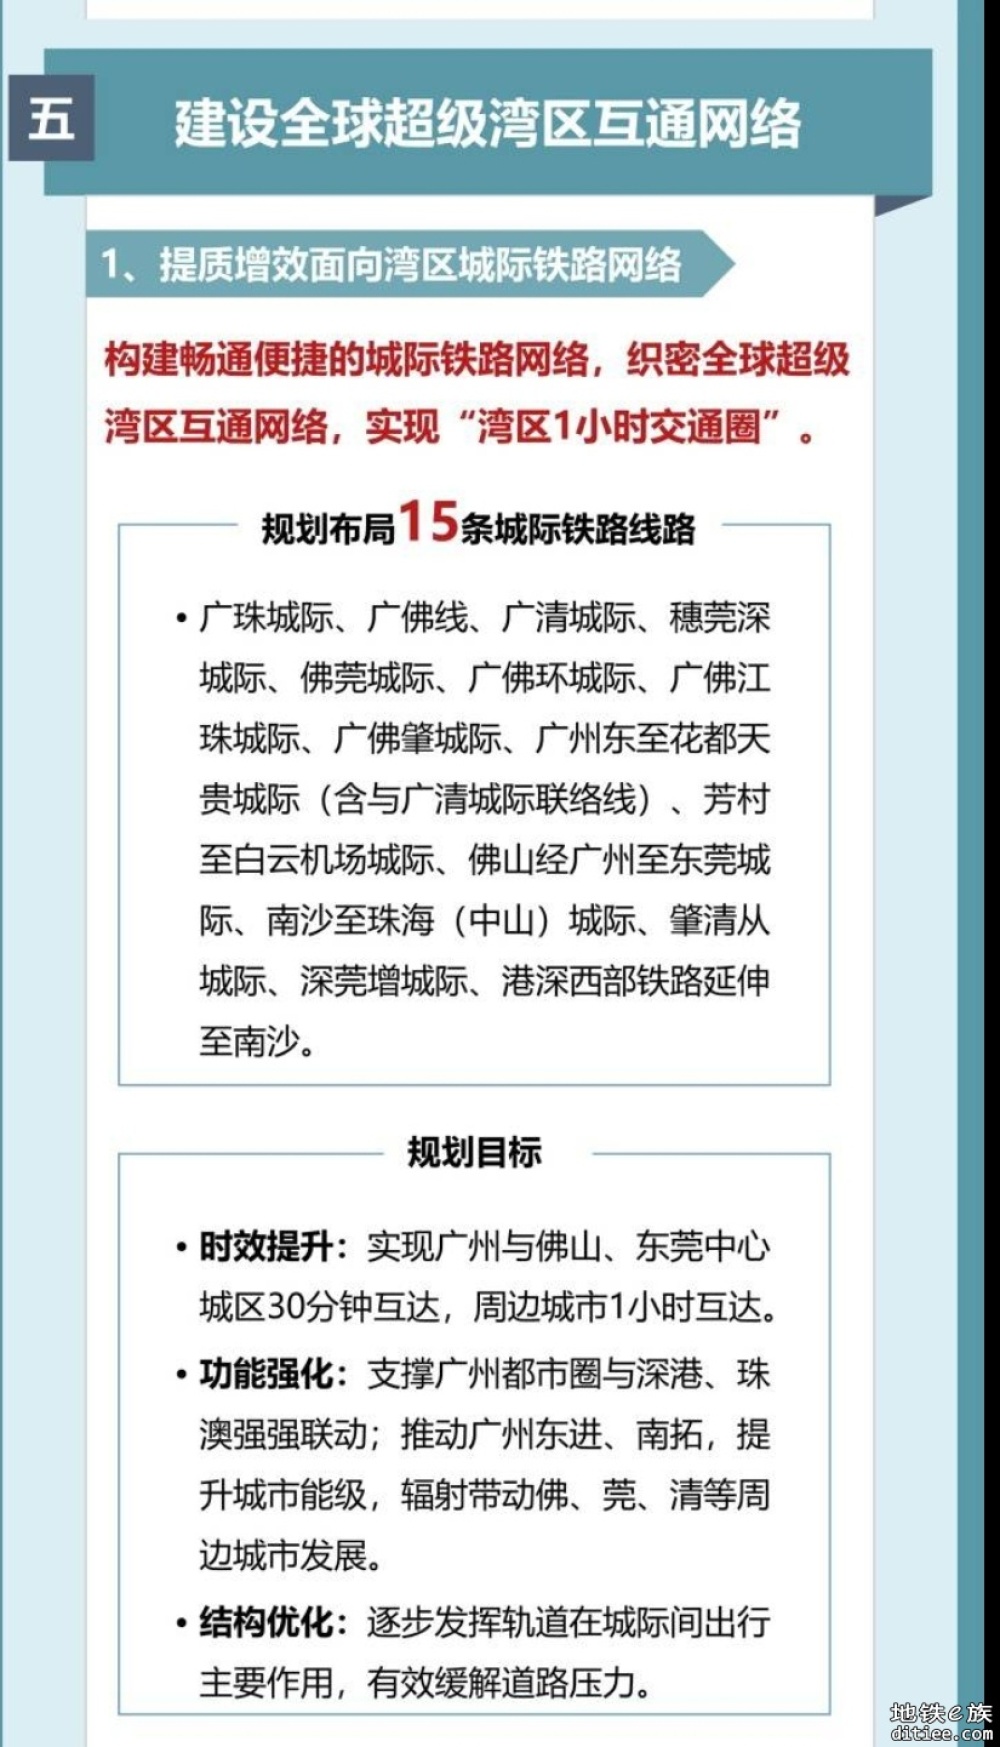 广州综合交通体系规划公示，建设15条城际铁路